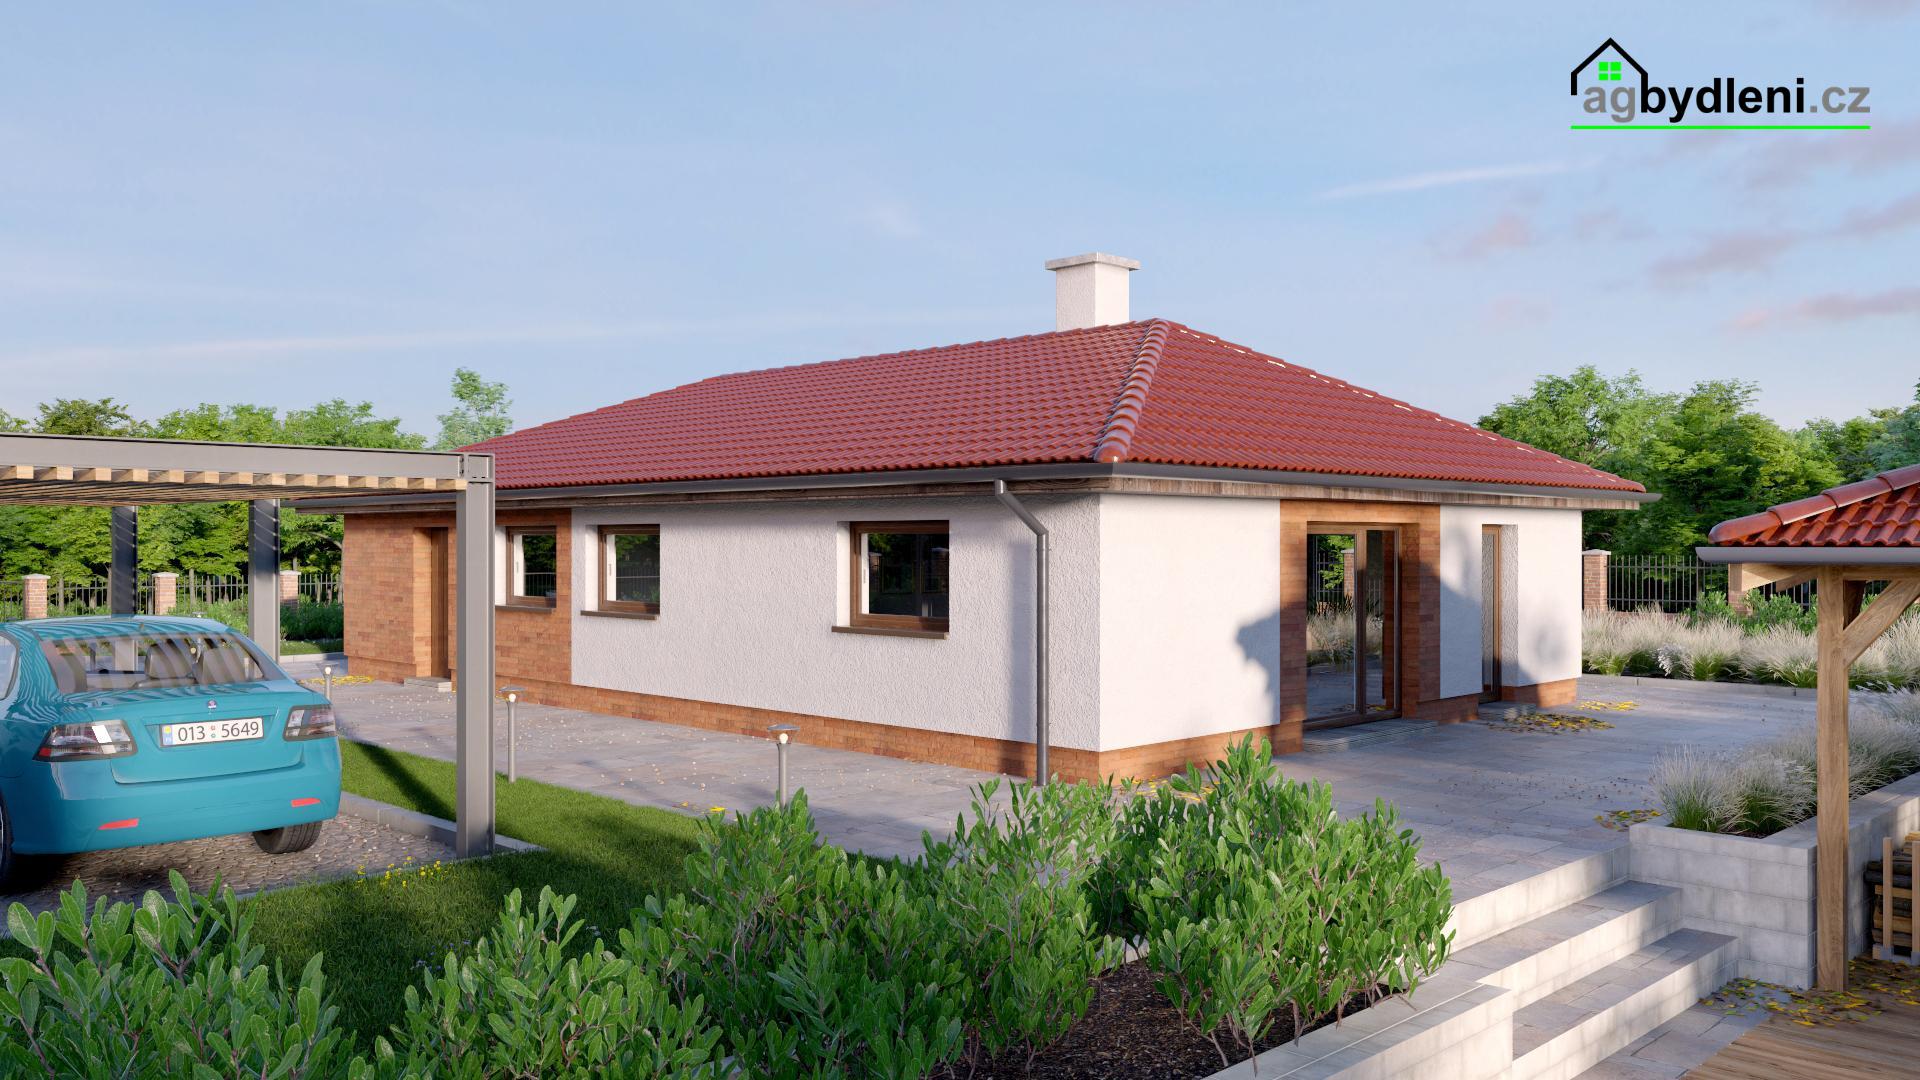 Prodej rodinného domu 104 m2 typu bungalov na zajištěném pozemku 1249 m2, obrázek č. 2